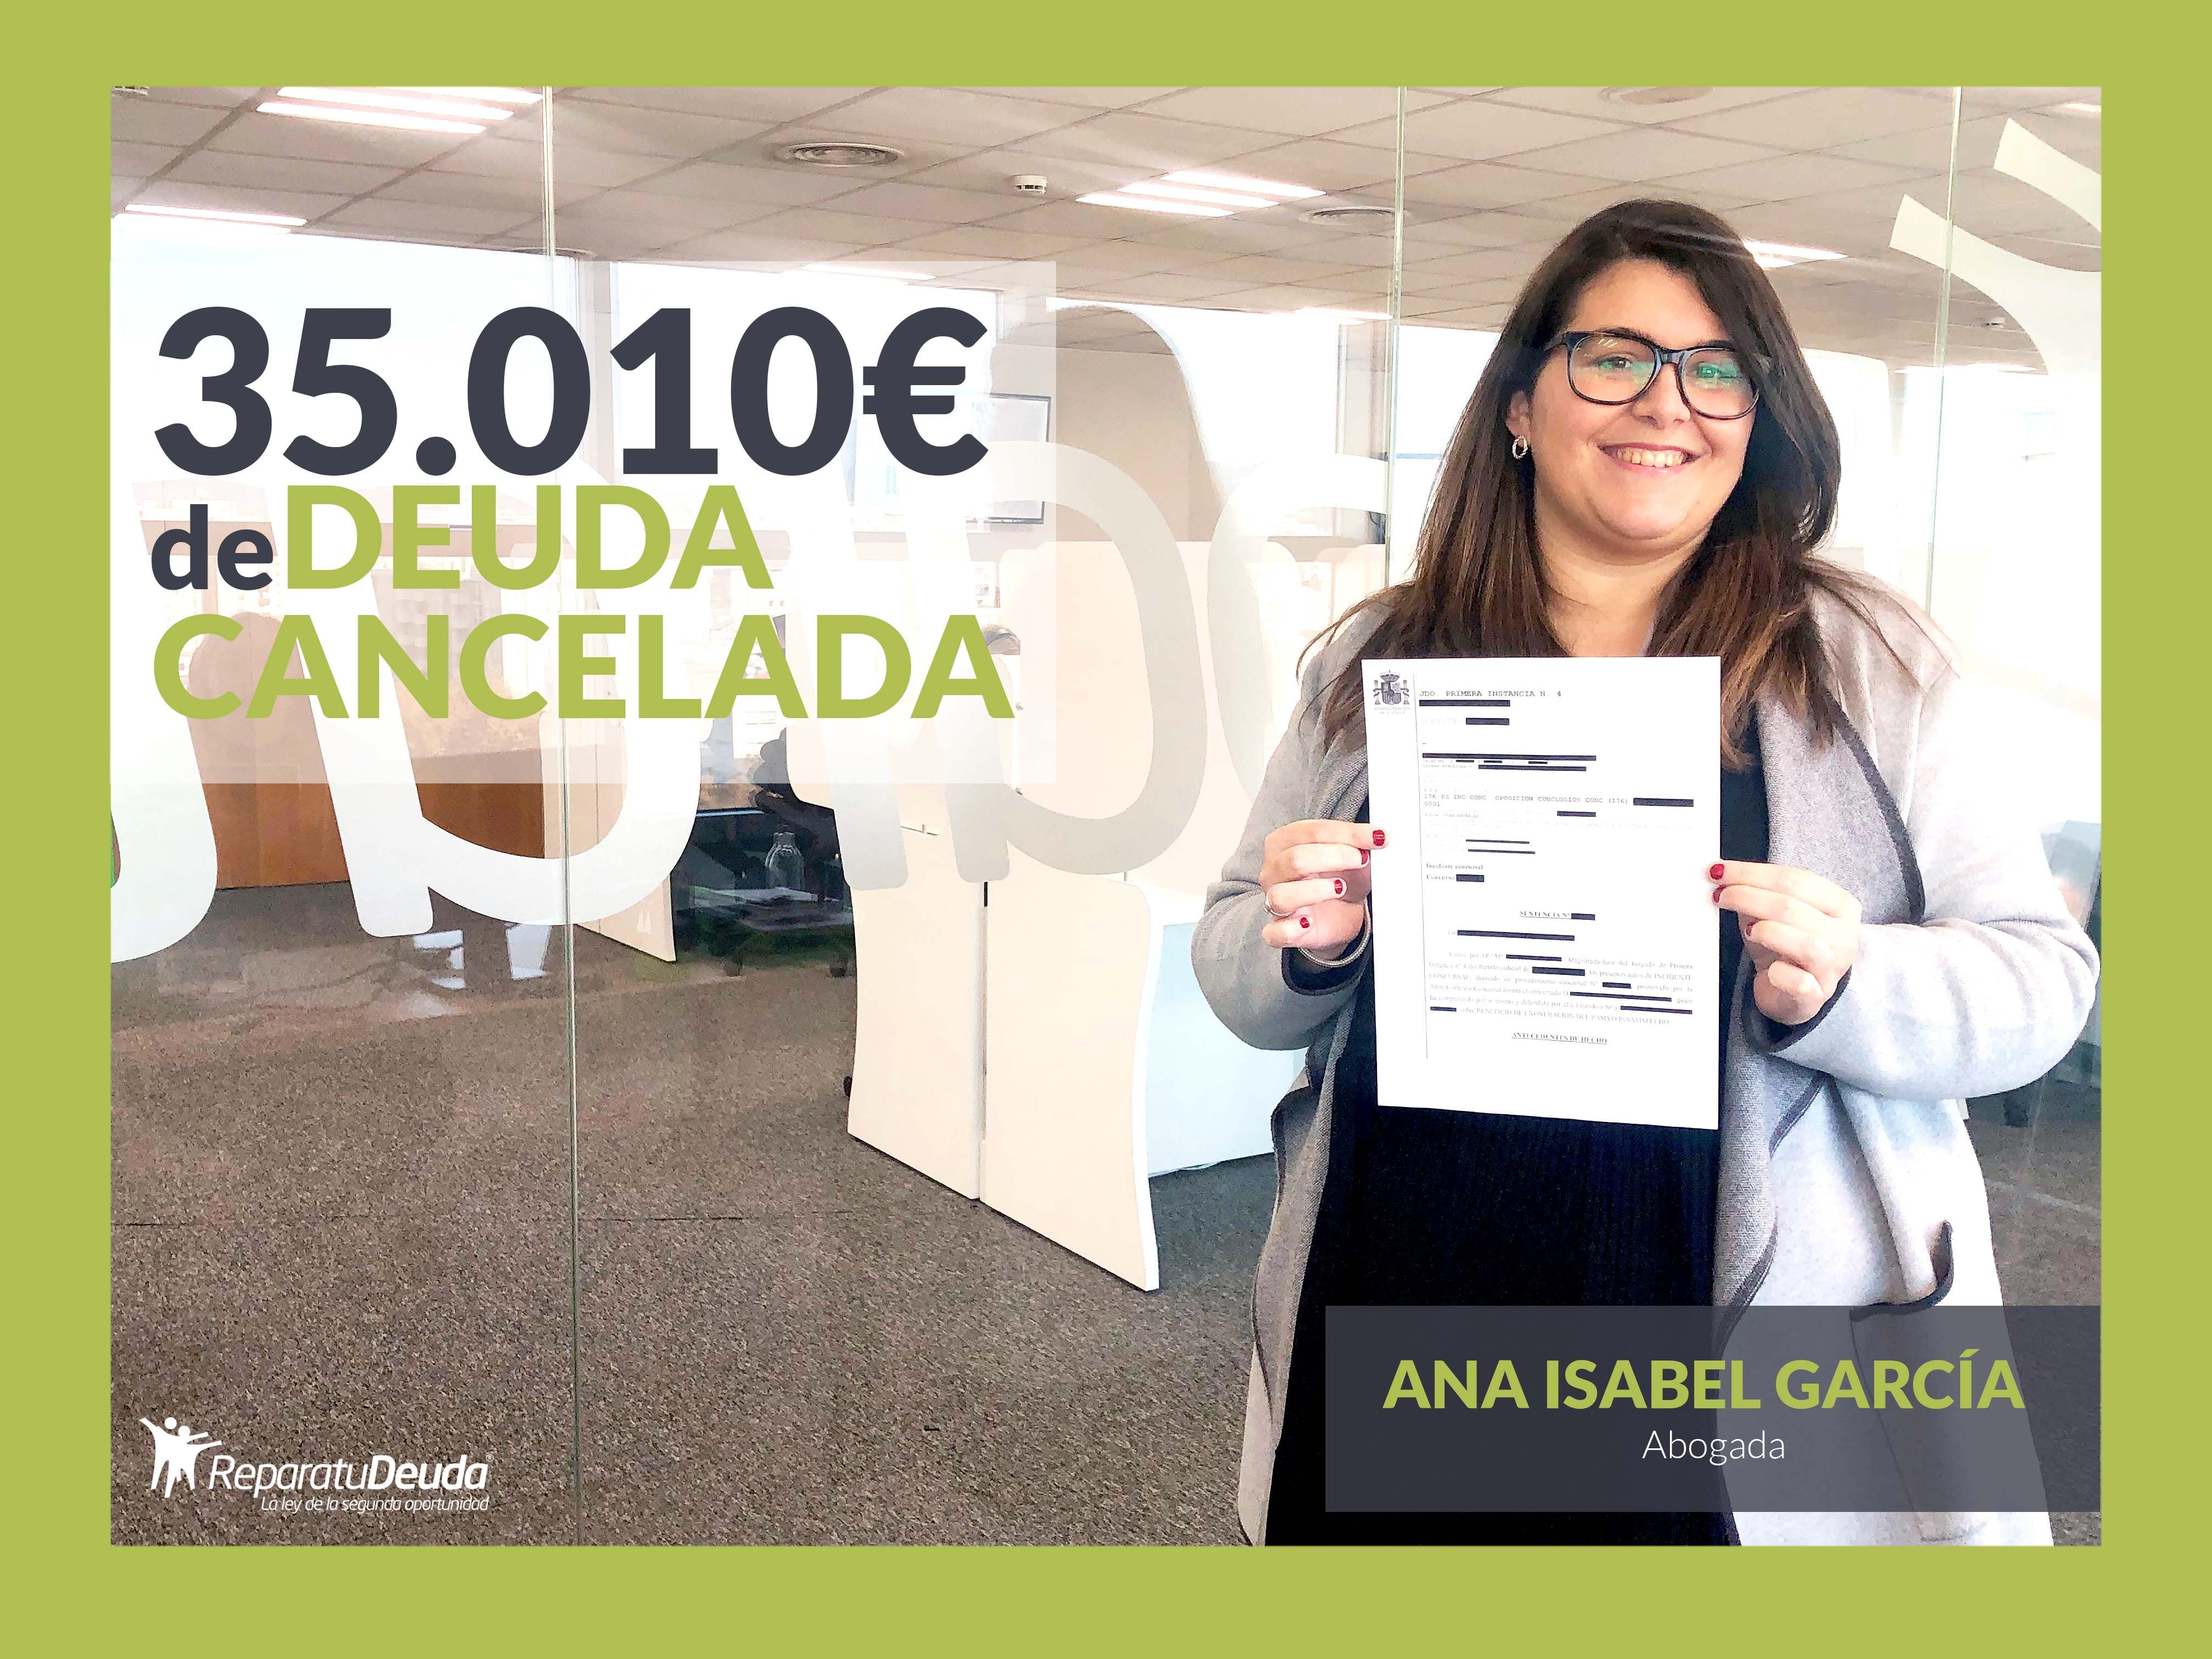 Repara tu Deuda cancela 35.010 ? en Hospitalet de Llobregat, Barcelona con la Ley de Segunda Oportunidad